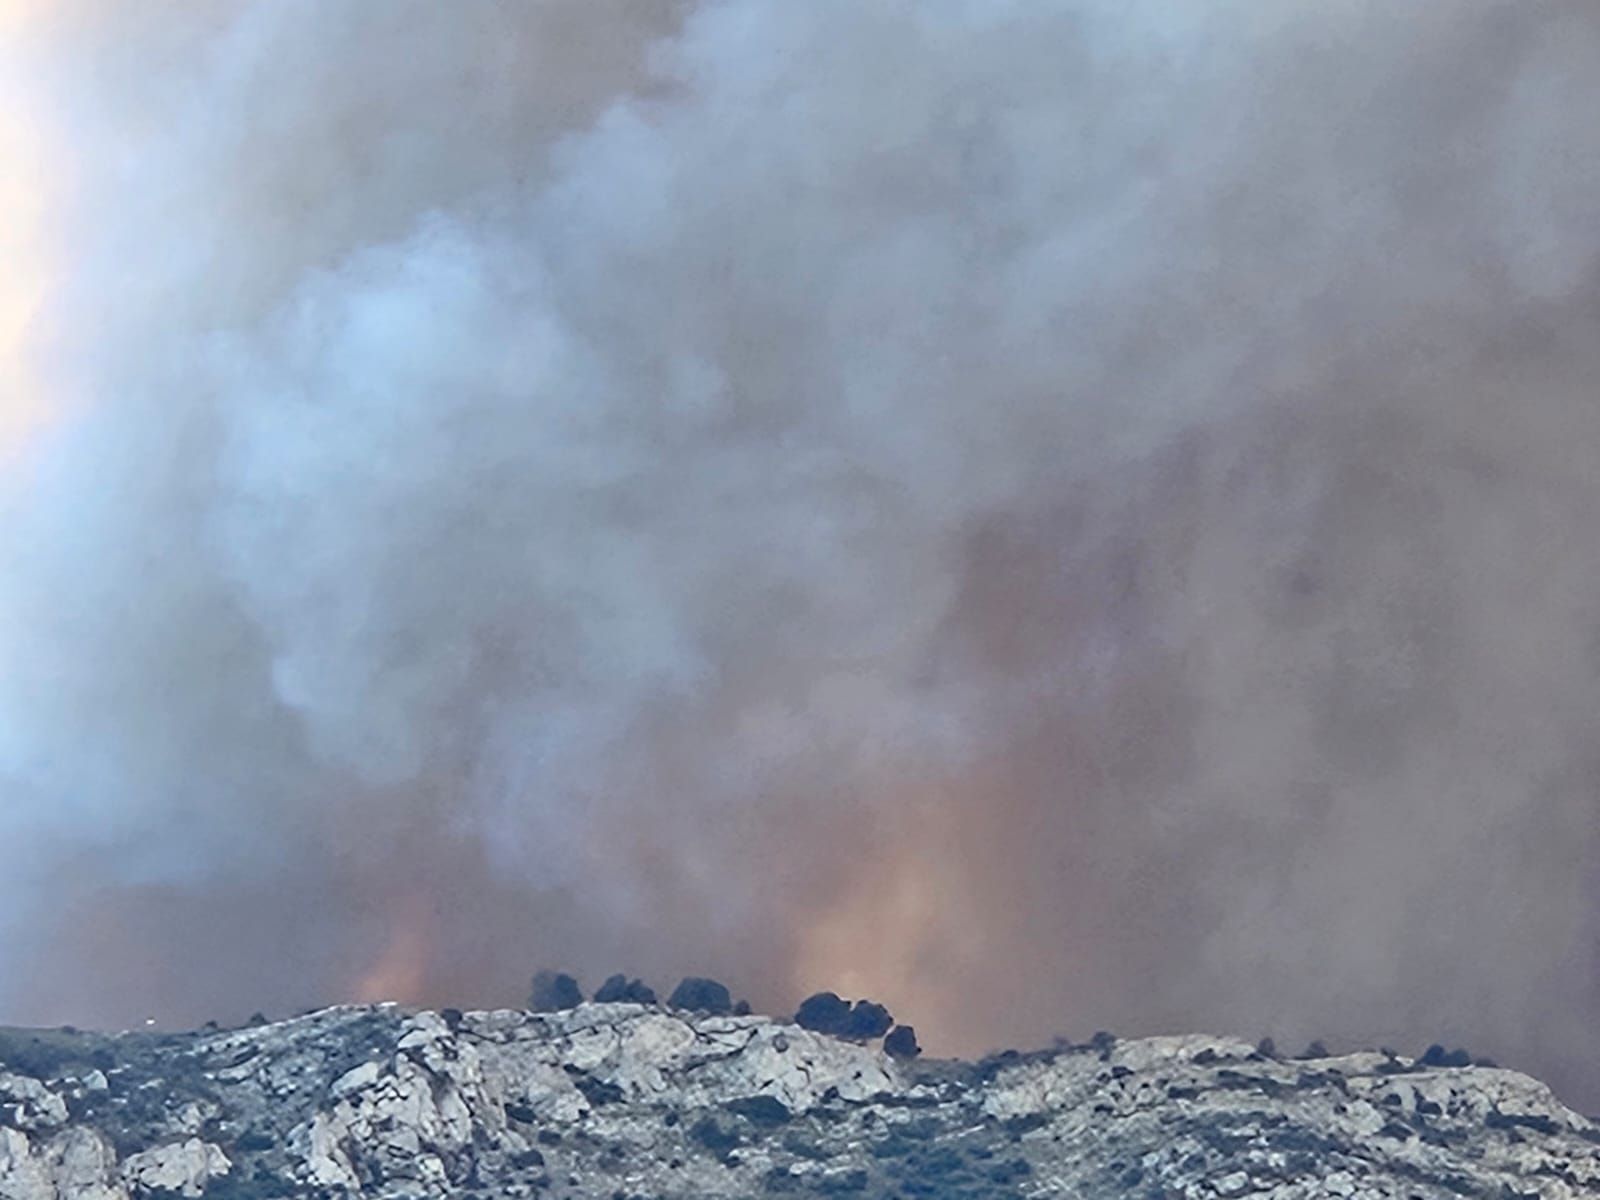 Las imágenes del incendio forestal declarado en Tàrbena